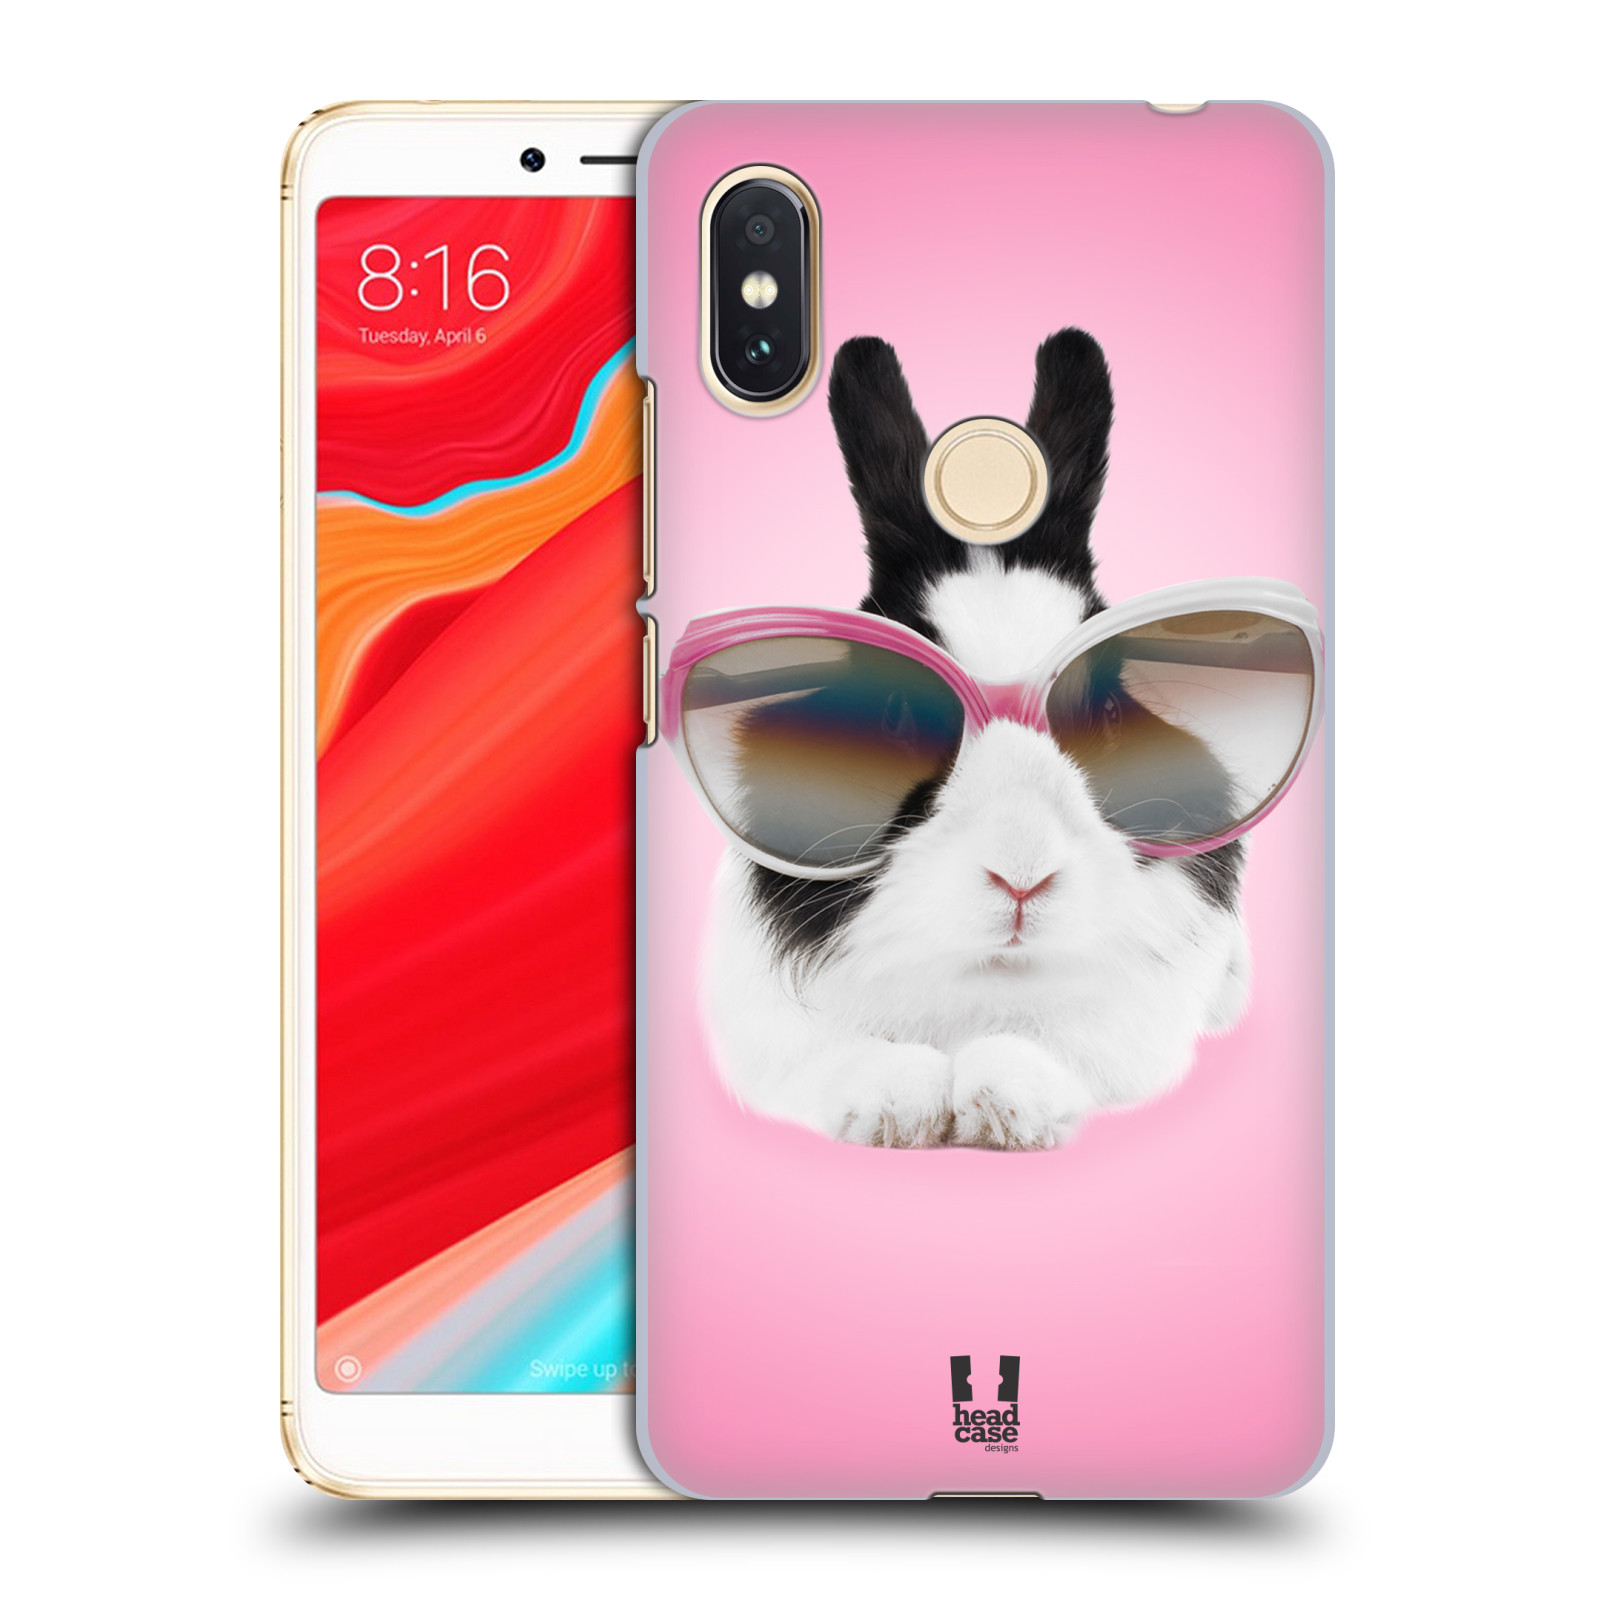 HEAD CASE plastový obal na mobil Xiaomi Redmi S2 vzor Legrační zvířátka roztomilý králíček s brýlemi růžová